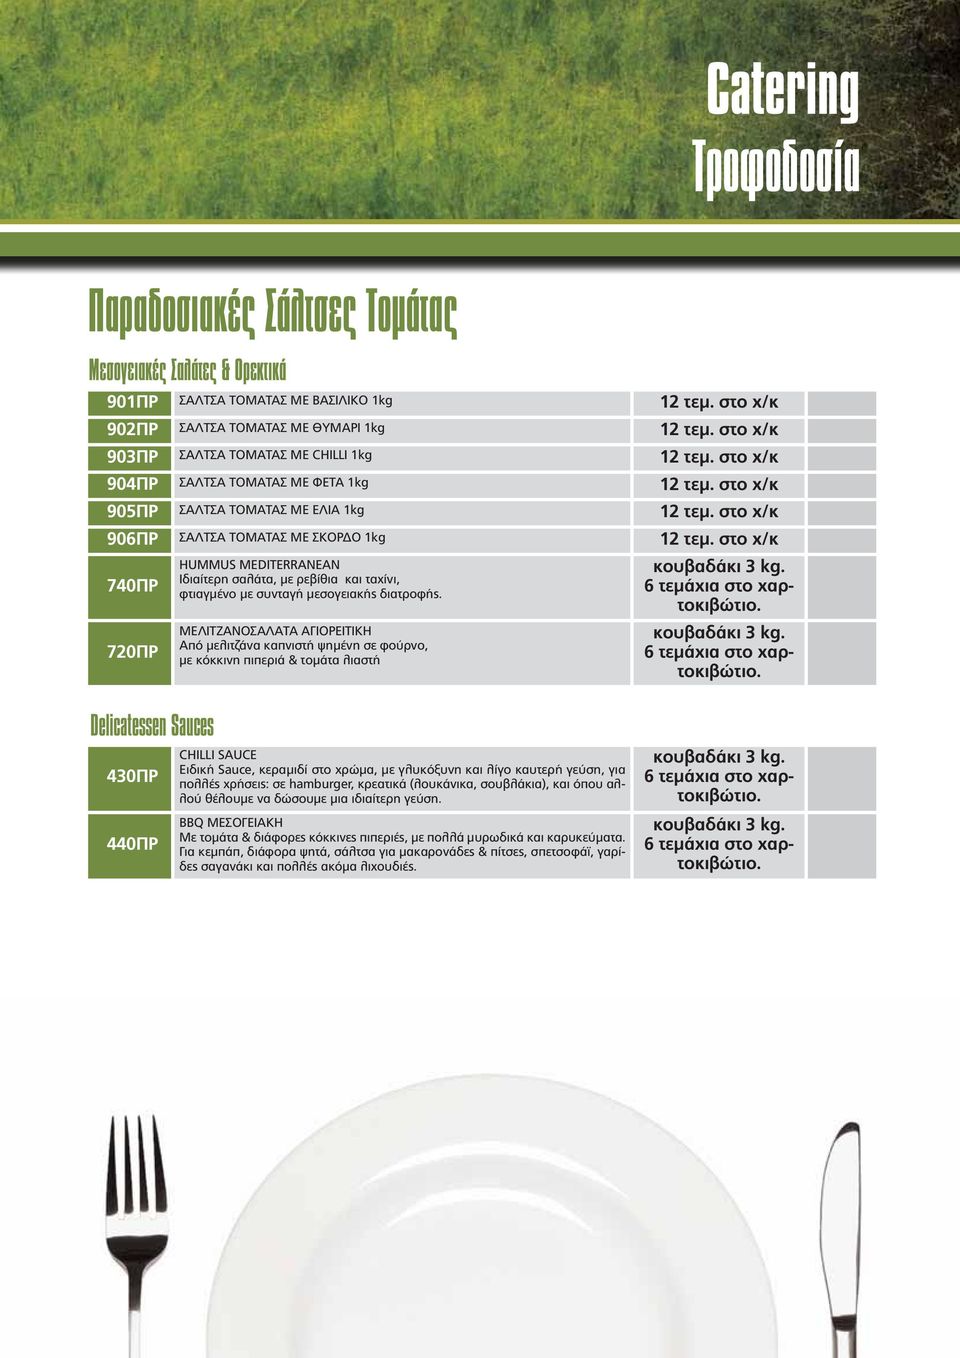 στο χ/κ 740ΠΡ 720ΠΡ HUMMUS MEDITERRANEAN Ιδιαίτερη σαλάτα, με ρεβίθια και ταχίνι, φτιαγμένο με συνταγή μεσογειακής διατροφής.